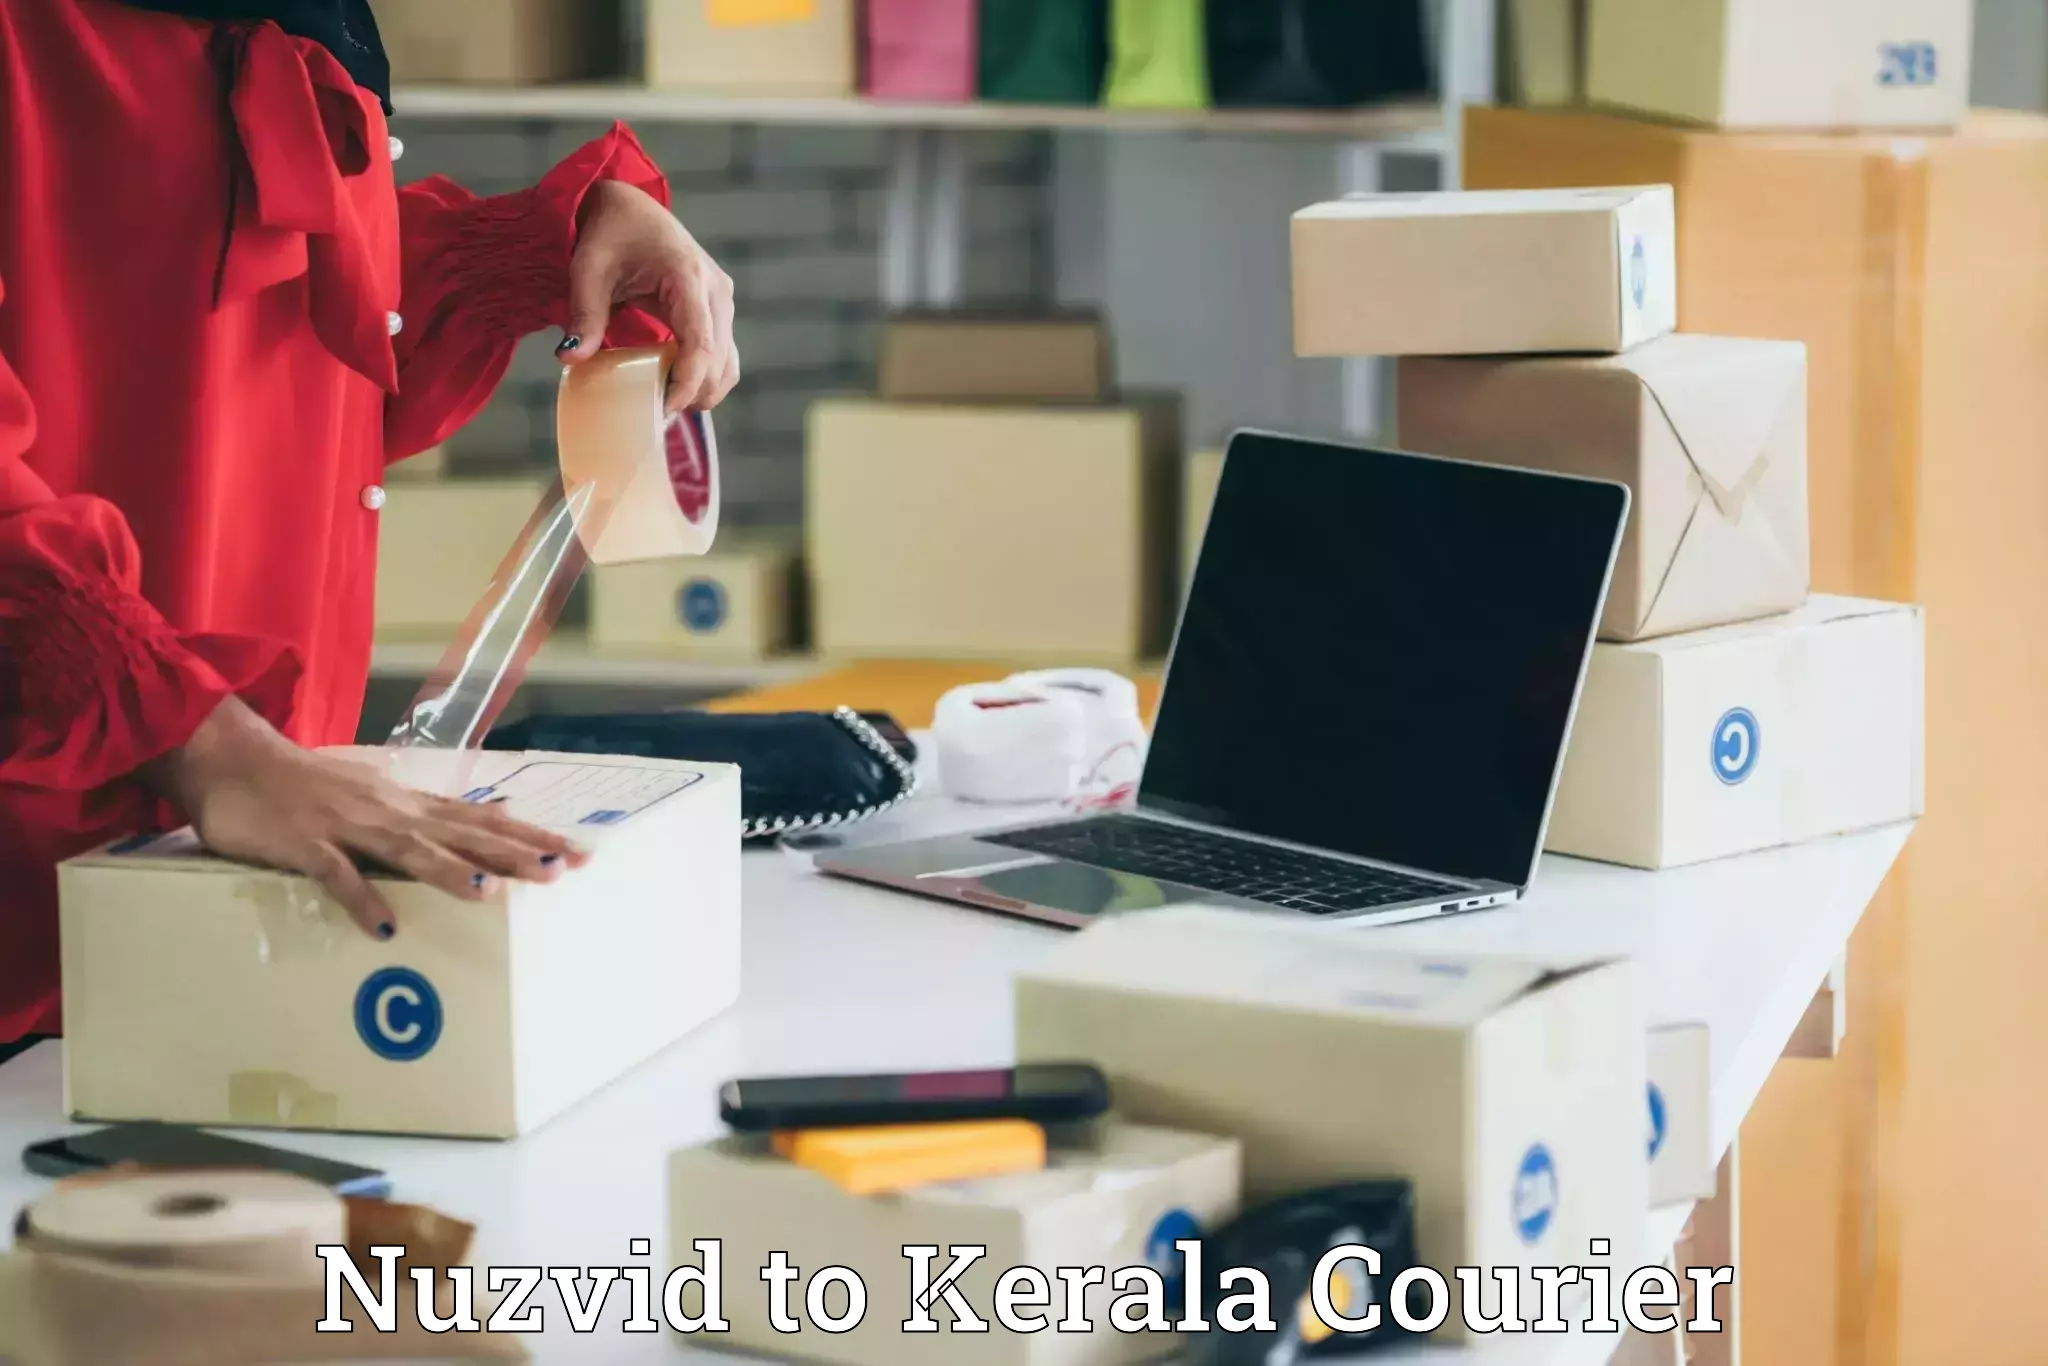 Lightweight courier Nuzvid to Cochin Port Kochi